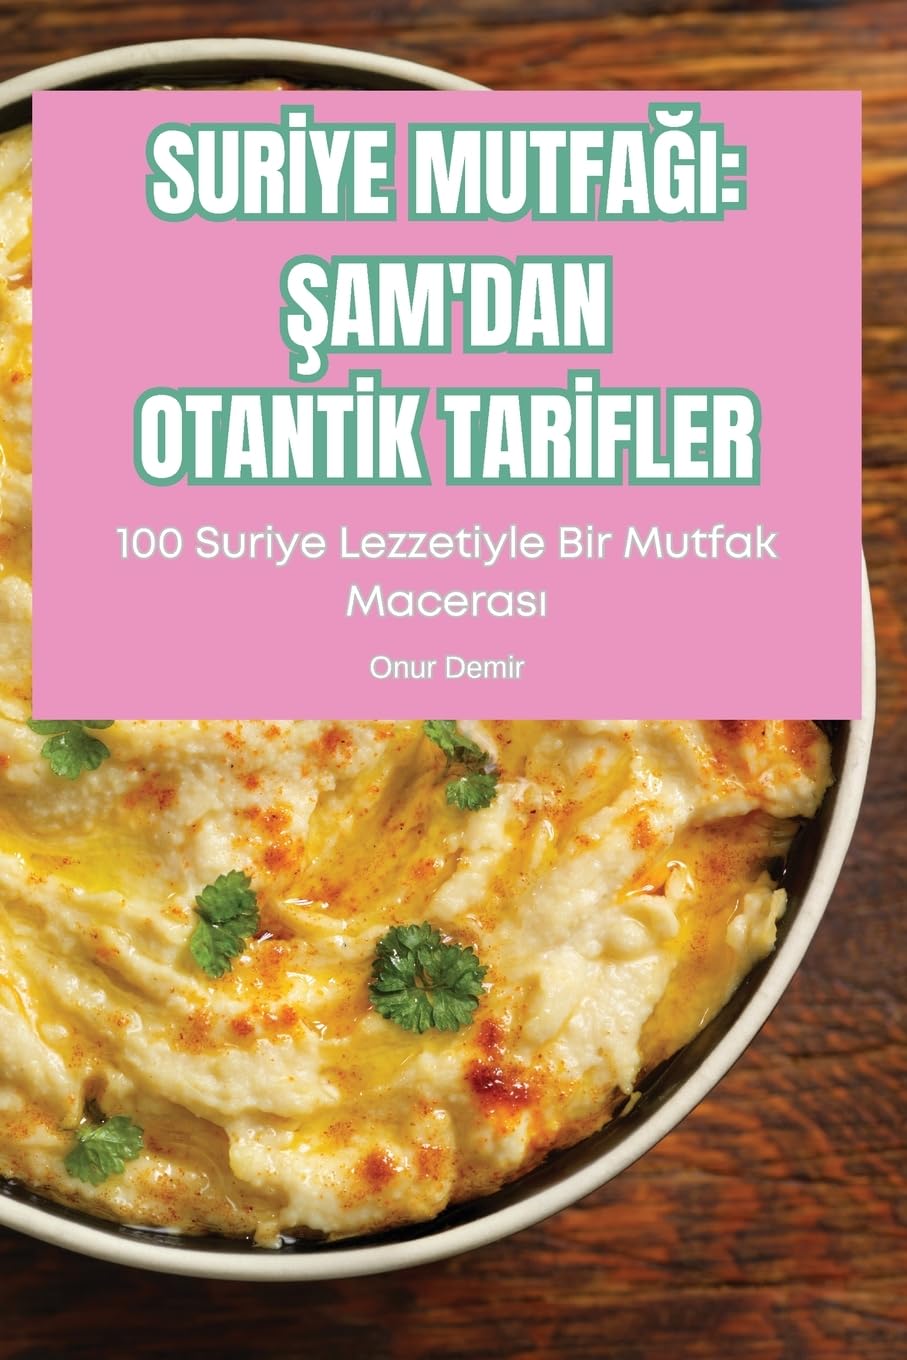 Surİye MutfaĞi: Şam'dan Otantİk Tarİfler: Şam'dan Otantİk Tarİfler (Turkish Edition)